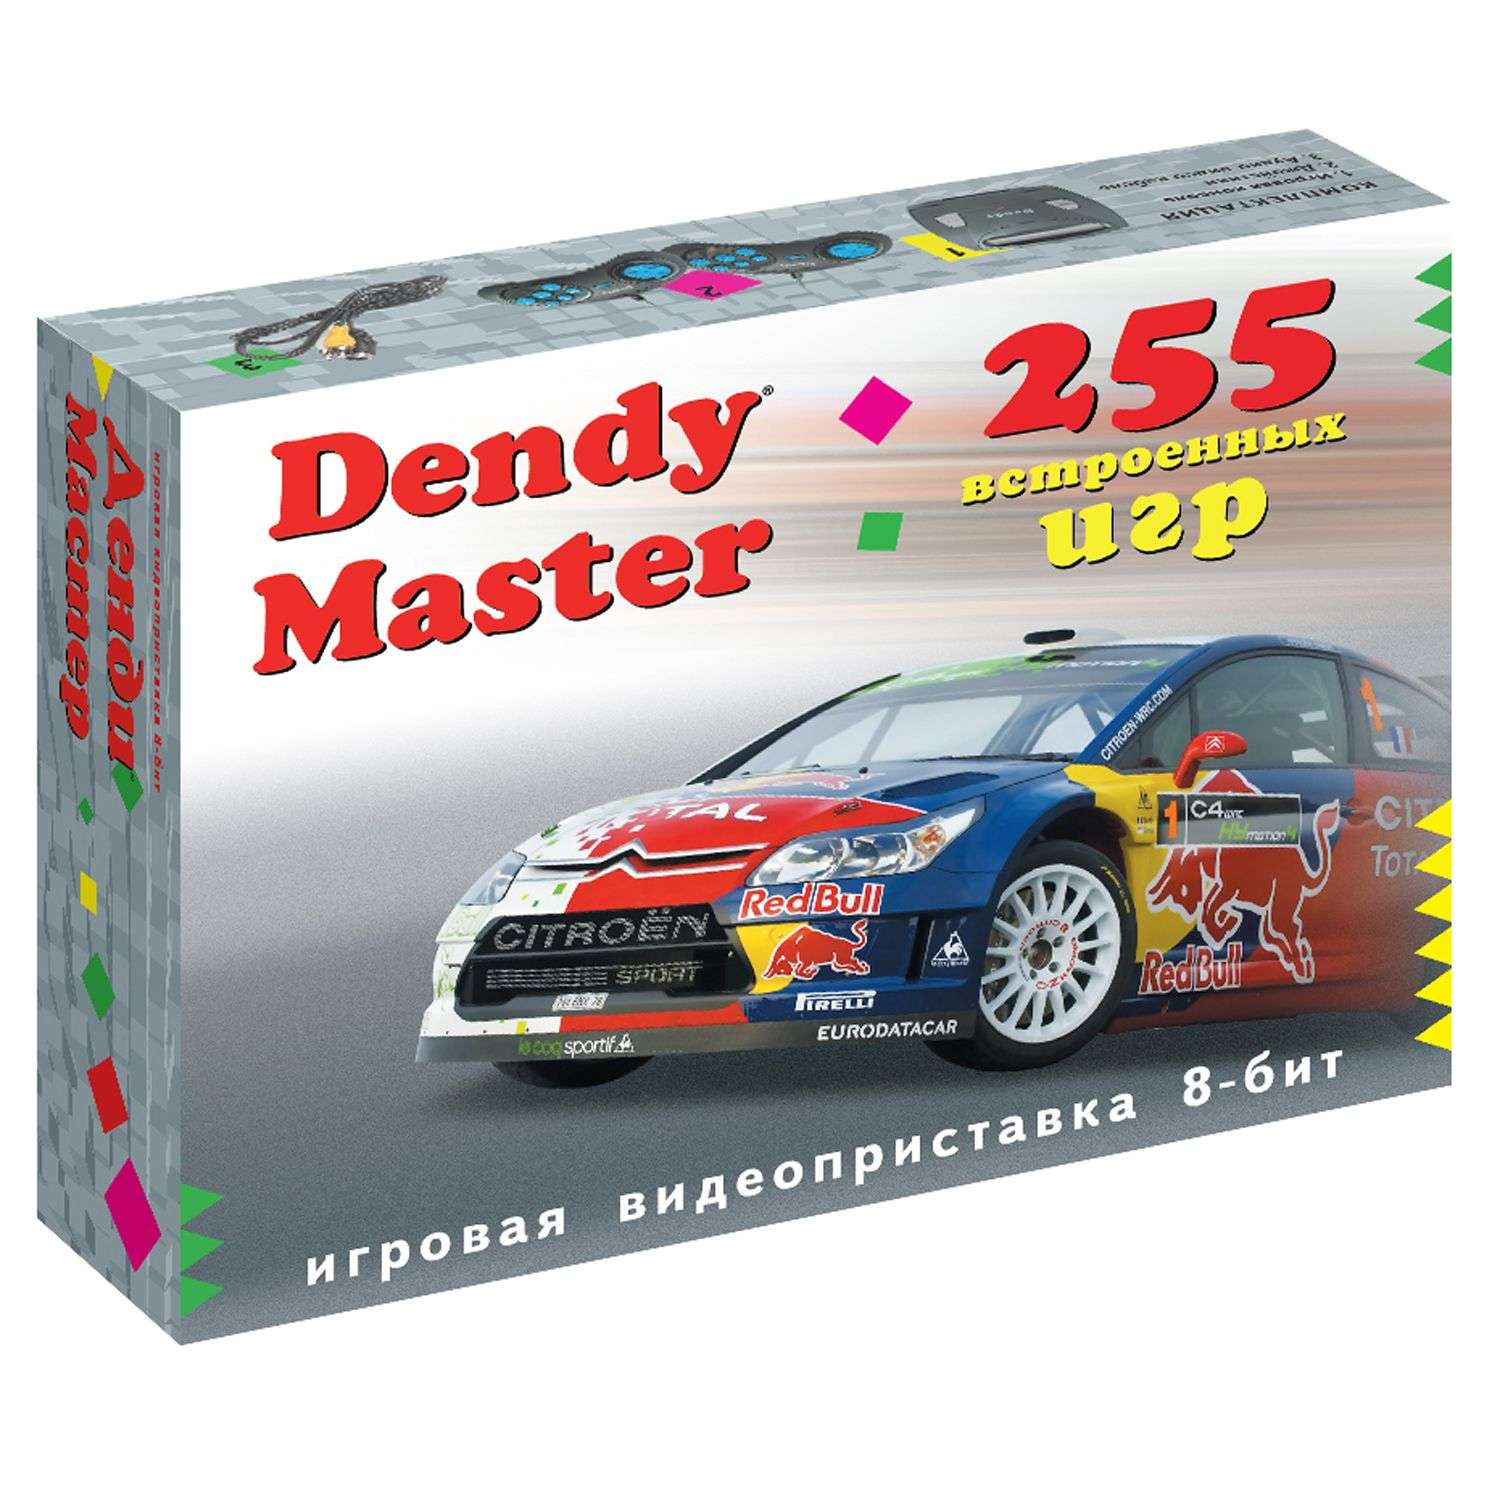 Игровая приставка Dendy Master 255 игр DM-255 - фото 2